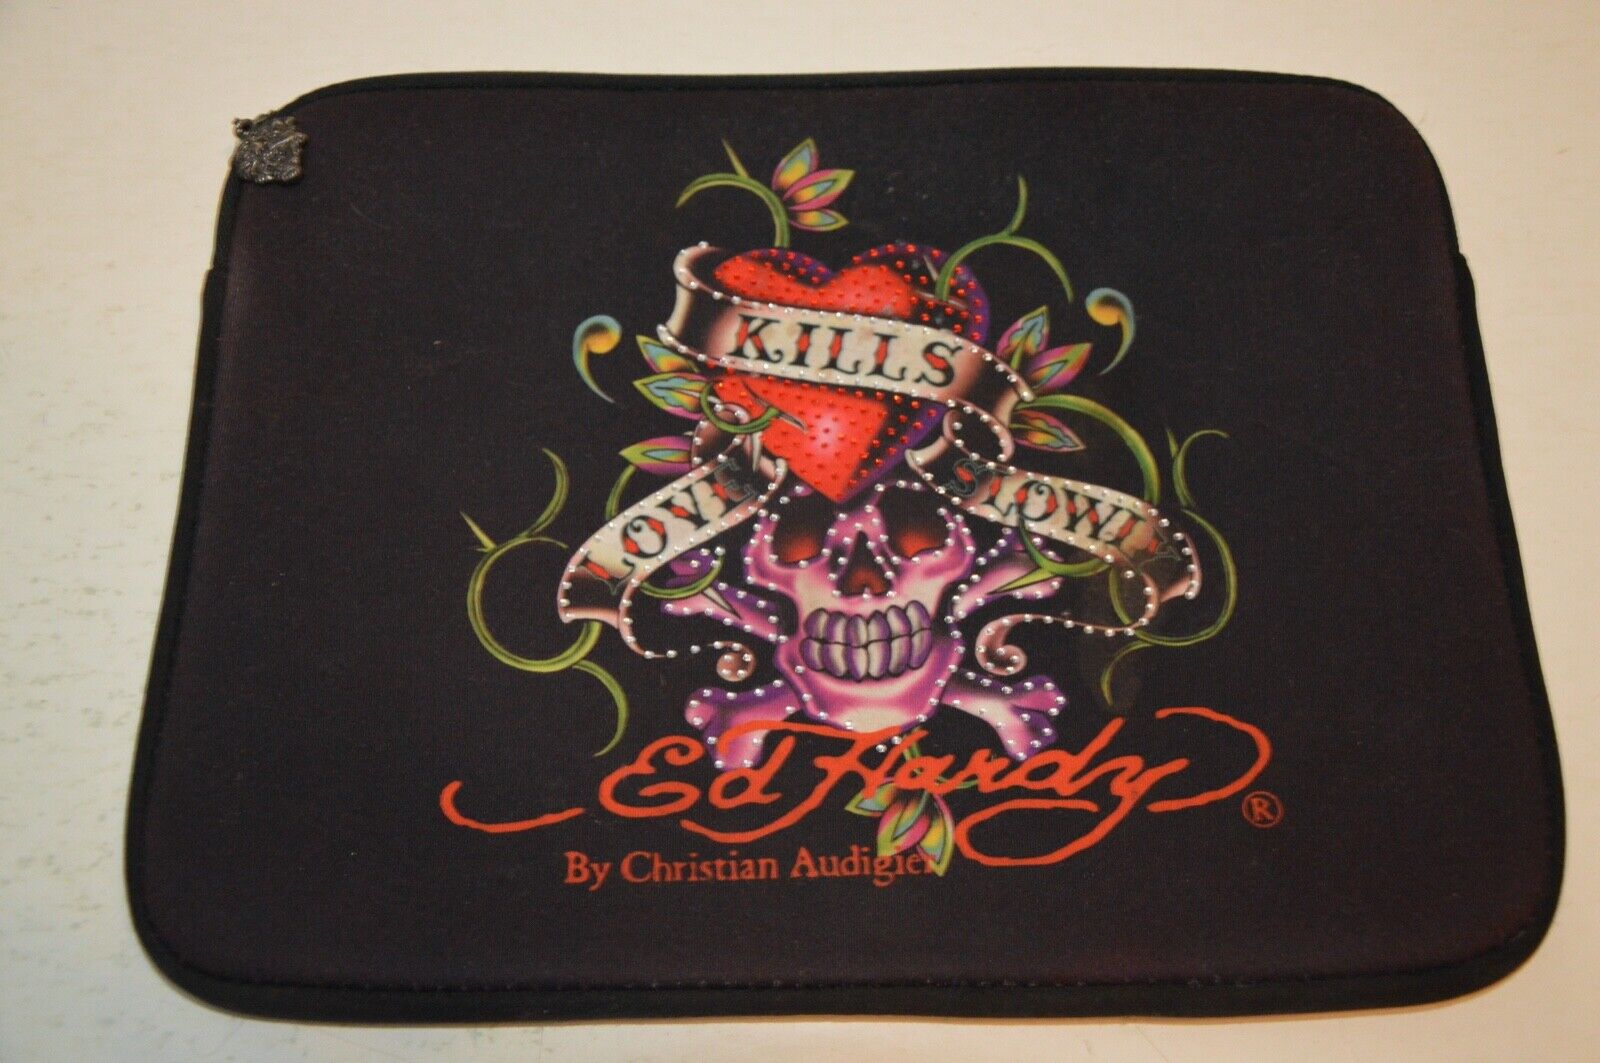 Ed Hardy love kills slowly Tattoo laptop sleeve Case Cover skull heart retro